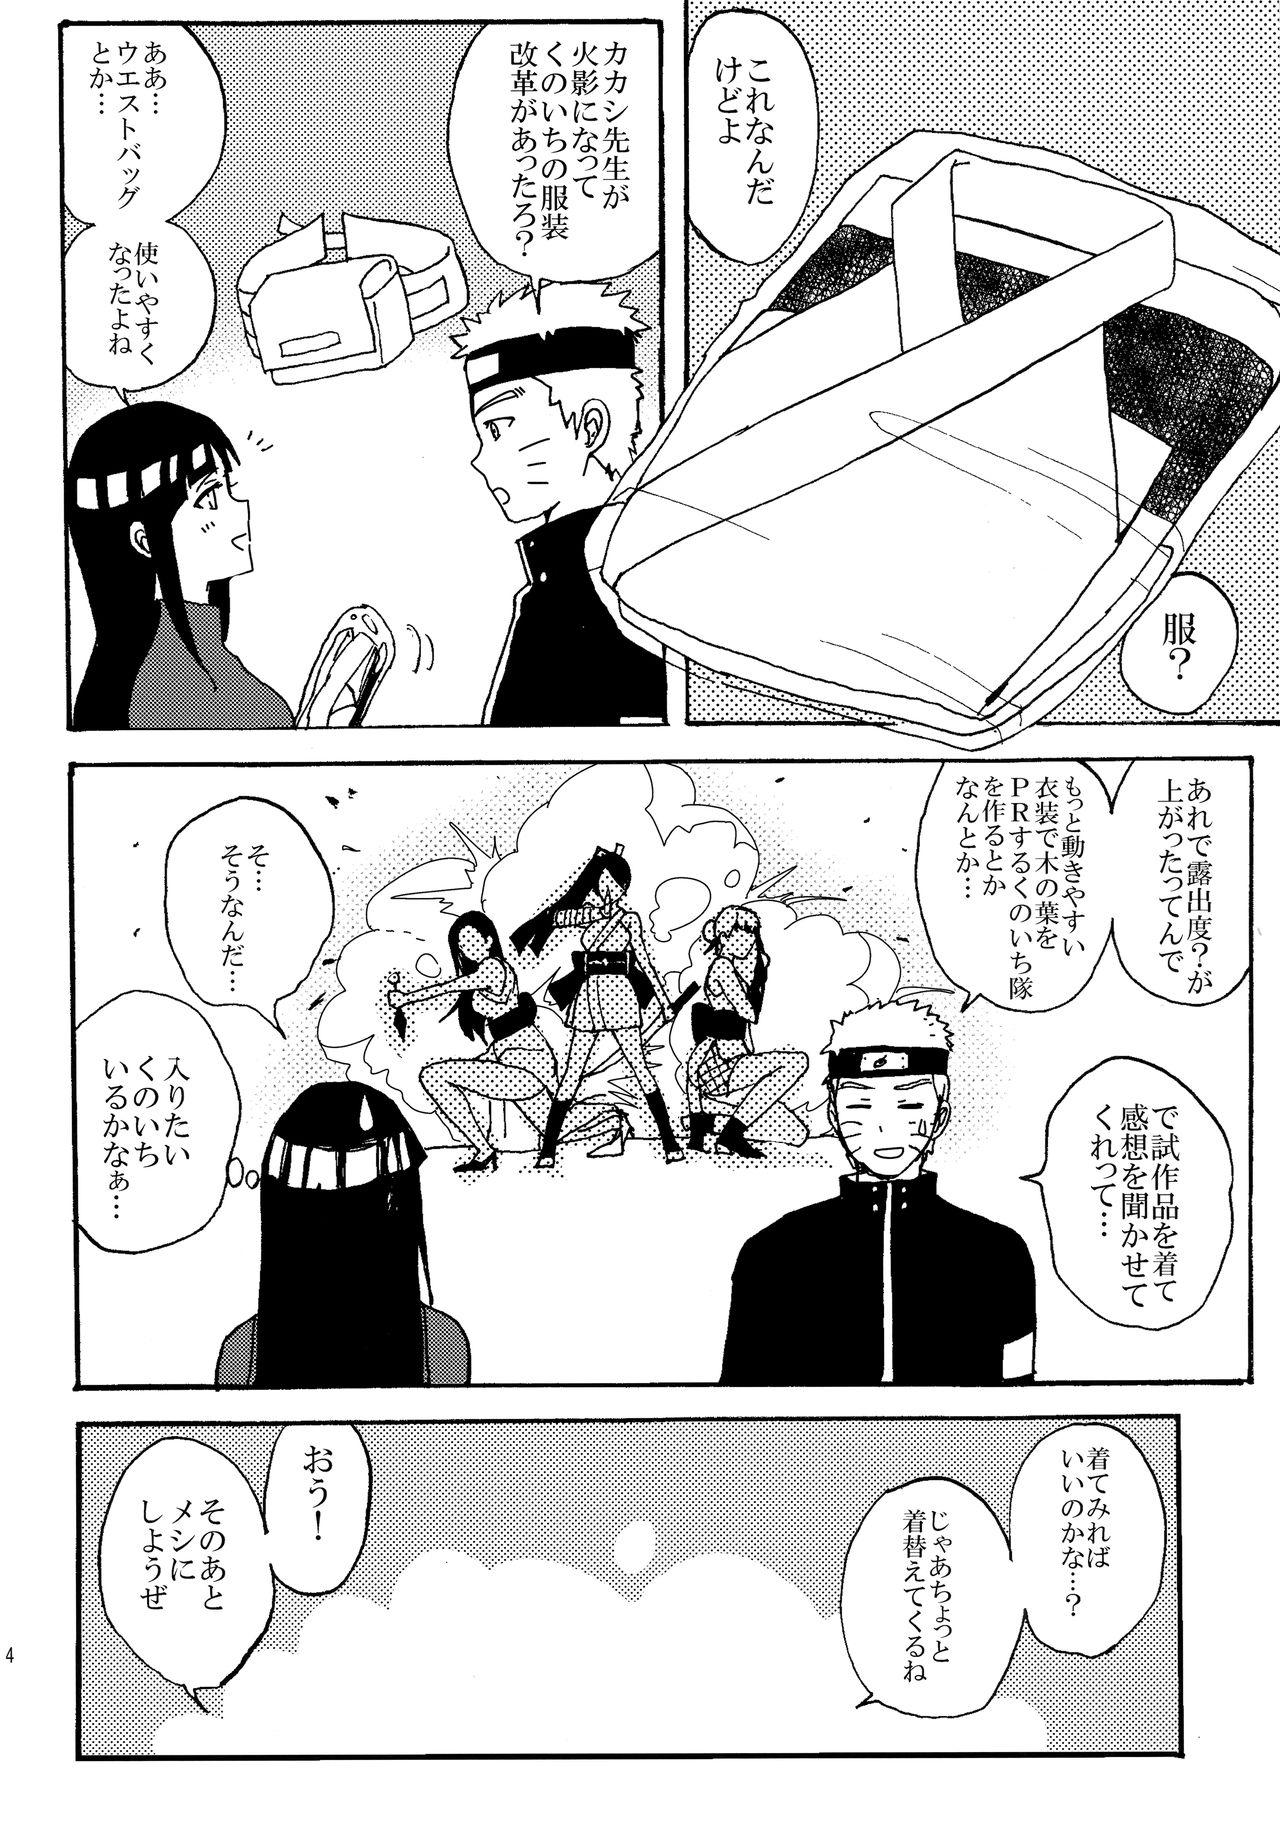 Passion Shinkon Hinata no Kunoichi Cosplay datteba yo! - Naruto Pauzudo - Page 3